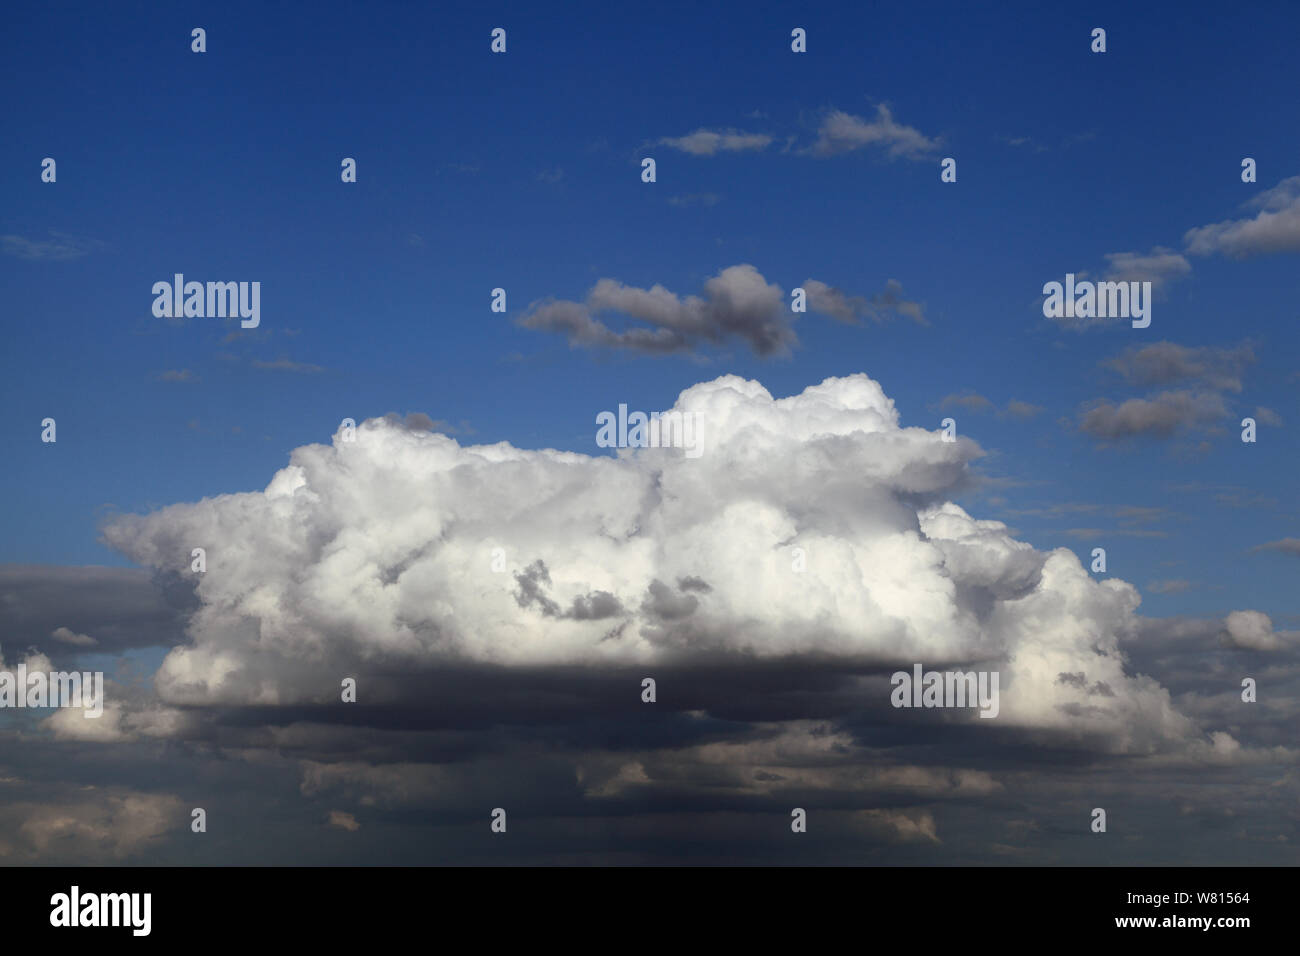 White cumulus cloud, grey clouds, blue sky Stock Photo